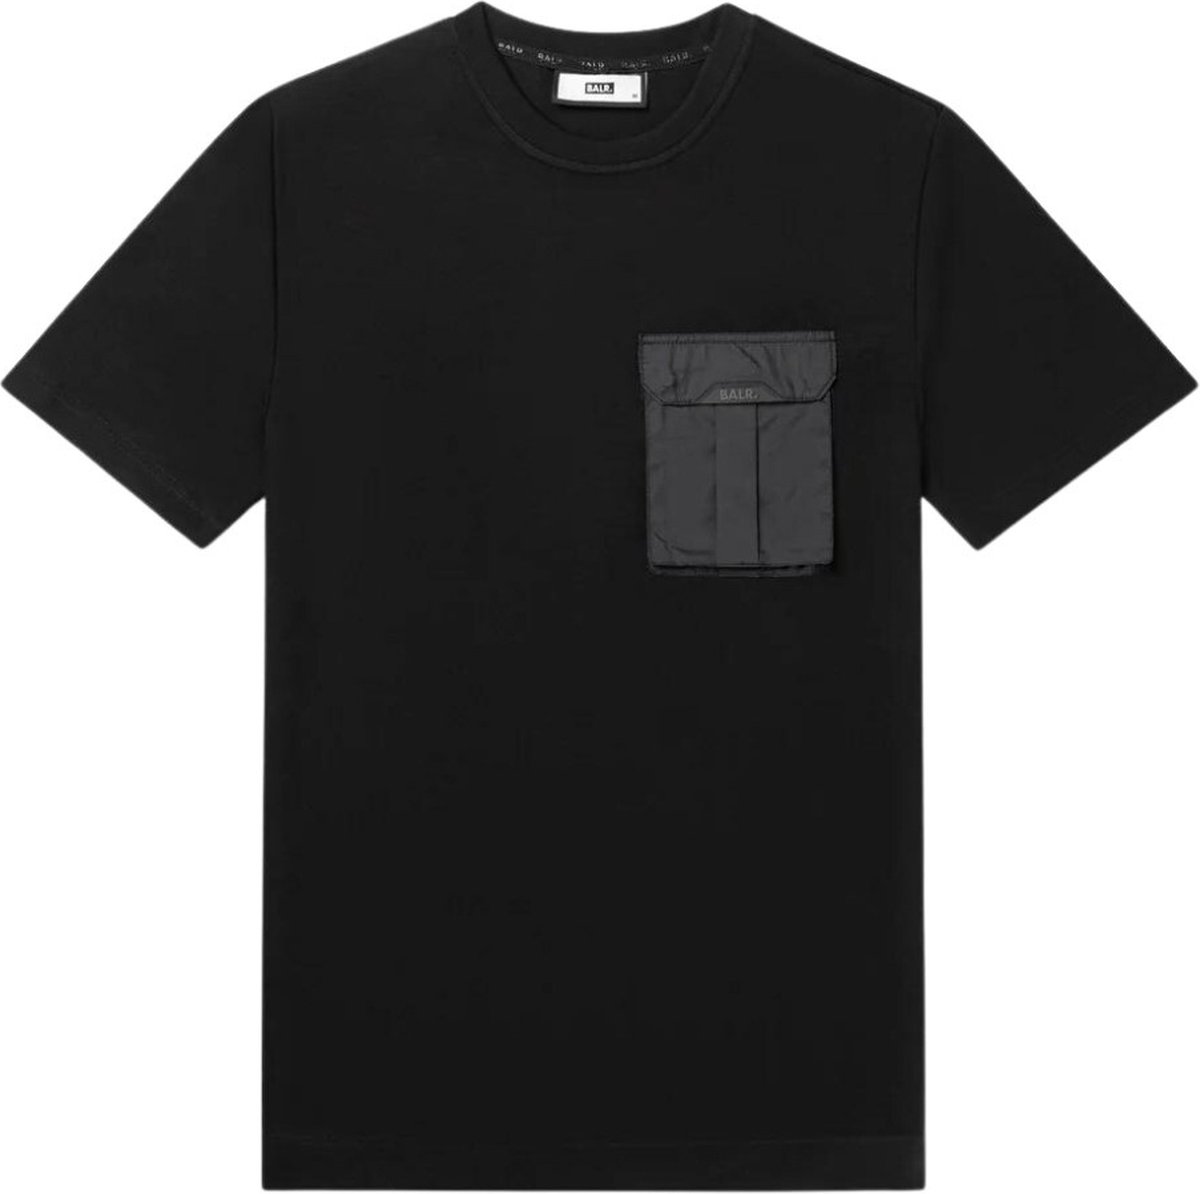 BALR. Shirt Zwart maat S Q-cargo t-shirts zwart